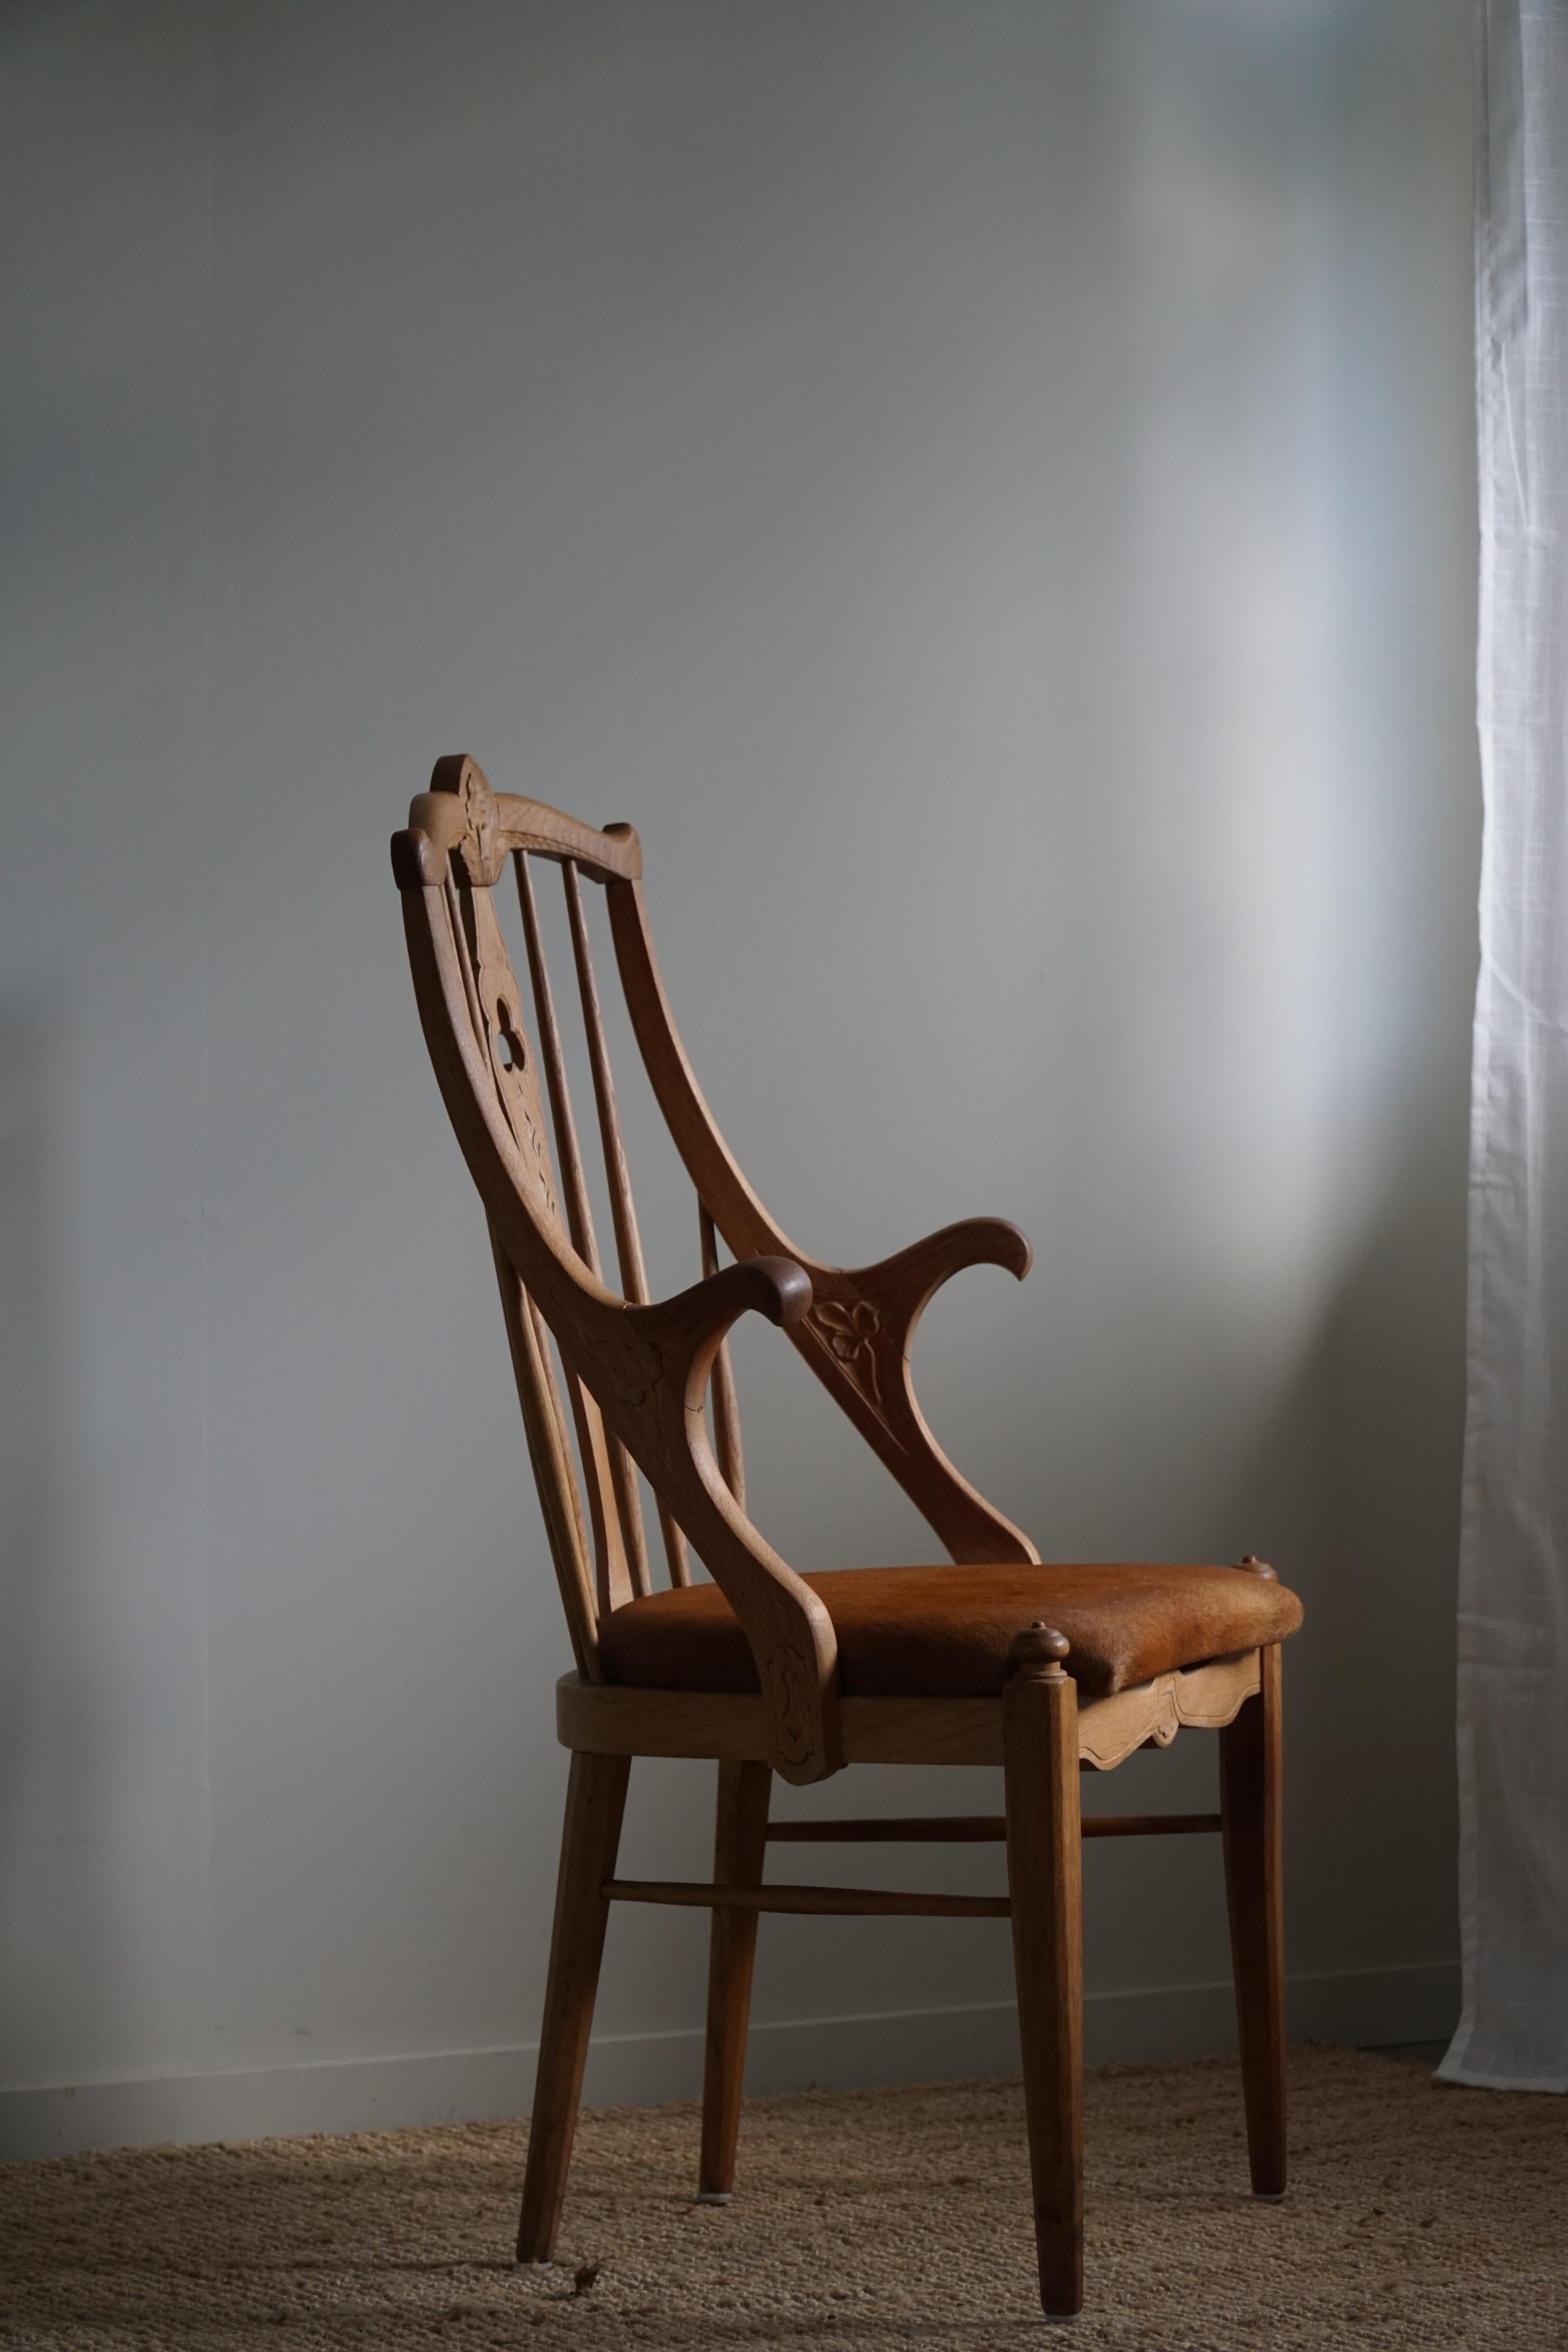 Ein wunderschöner Sessel mit hoher Rückenlehne aus massiver Eiche und Ledersitz aus den 1950er Jahren. Von einem dänischen Tischler in den 1950er Jahren in Handarbeit gefertigt. 
Die Armlehne ist rund geformt und die Rückenlehne ist mit schönen